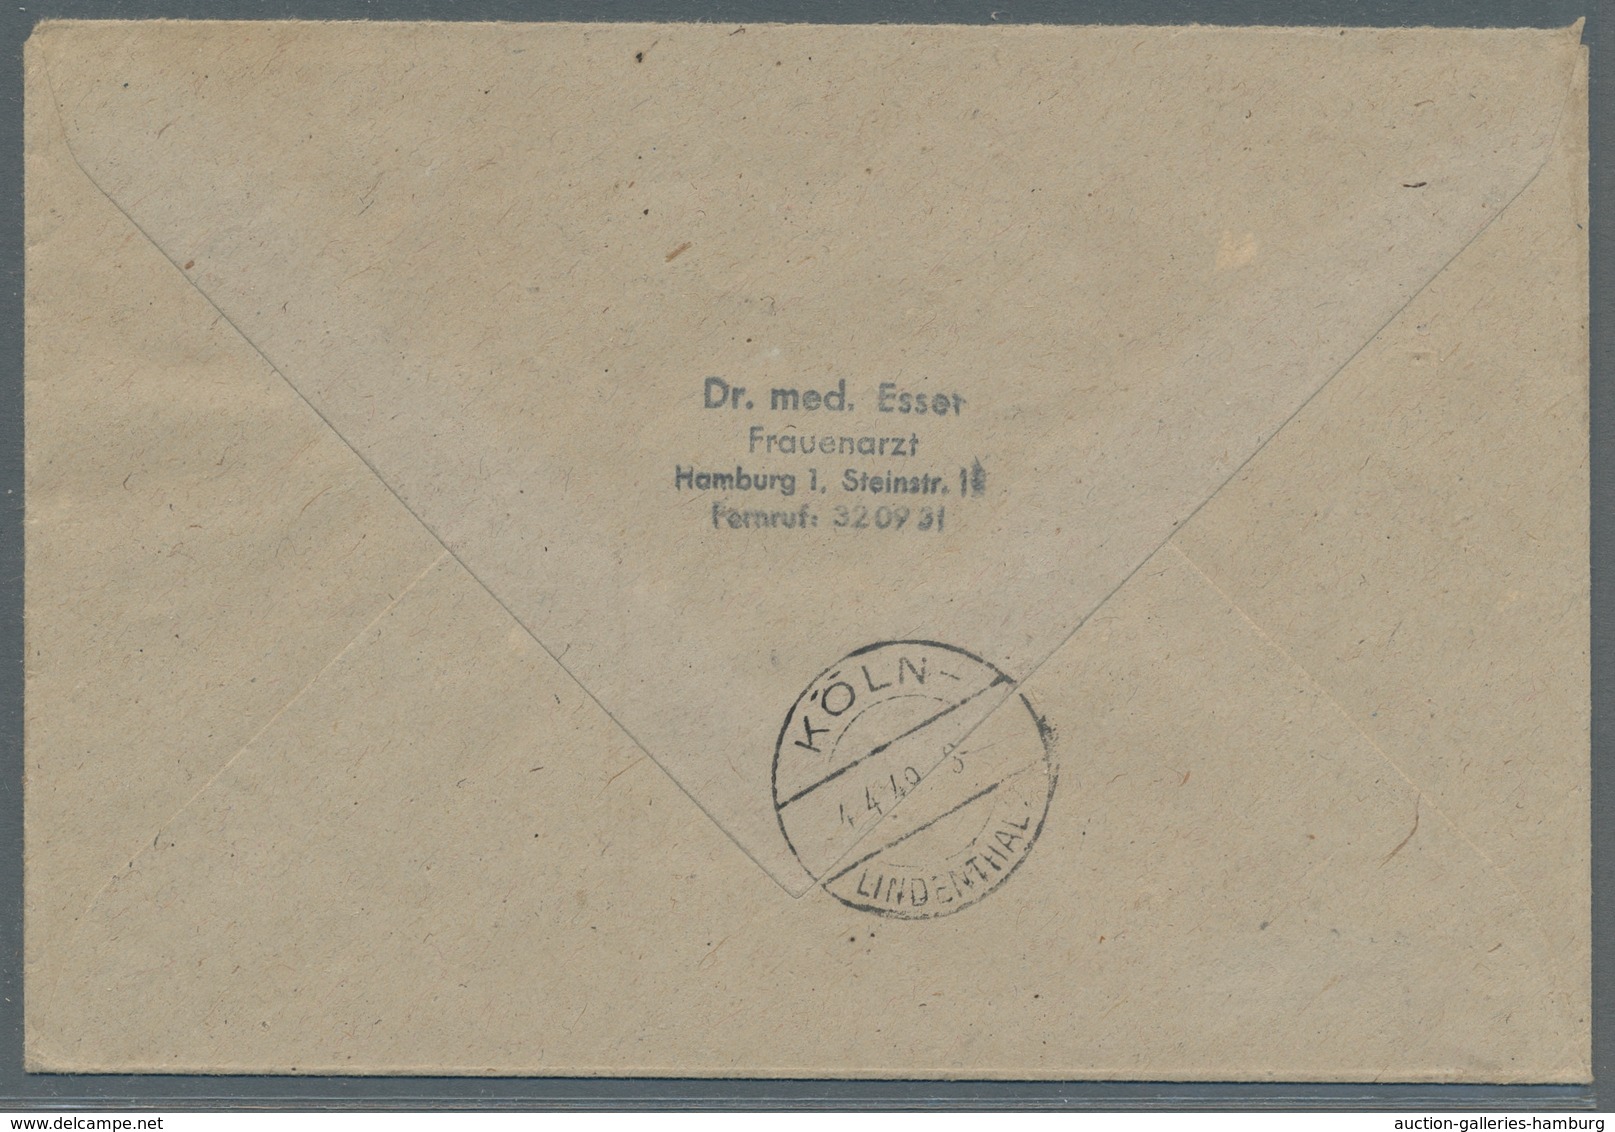 Bizone: 1948, Partie von 35 Werten der 25 Pfennig enggezähnt auf 22 Briefen, darunter u.a. 9 Paare u